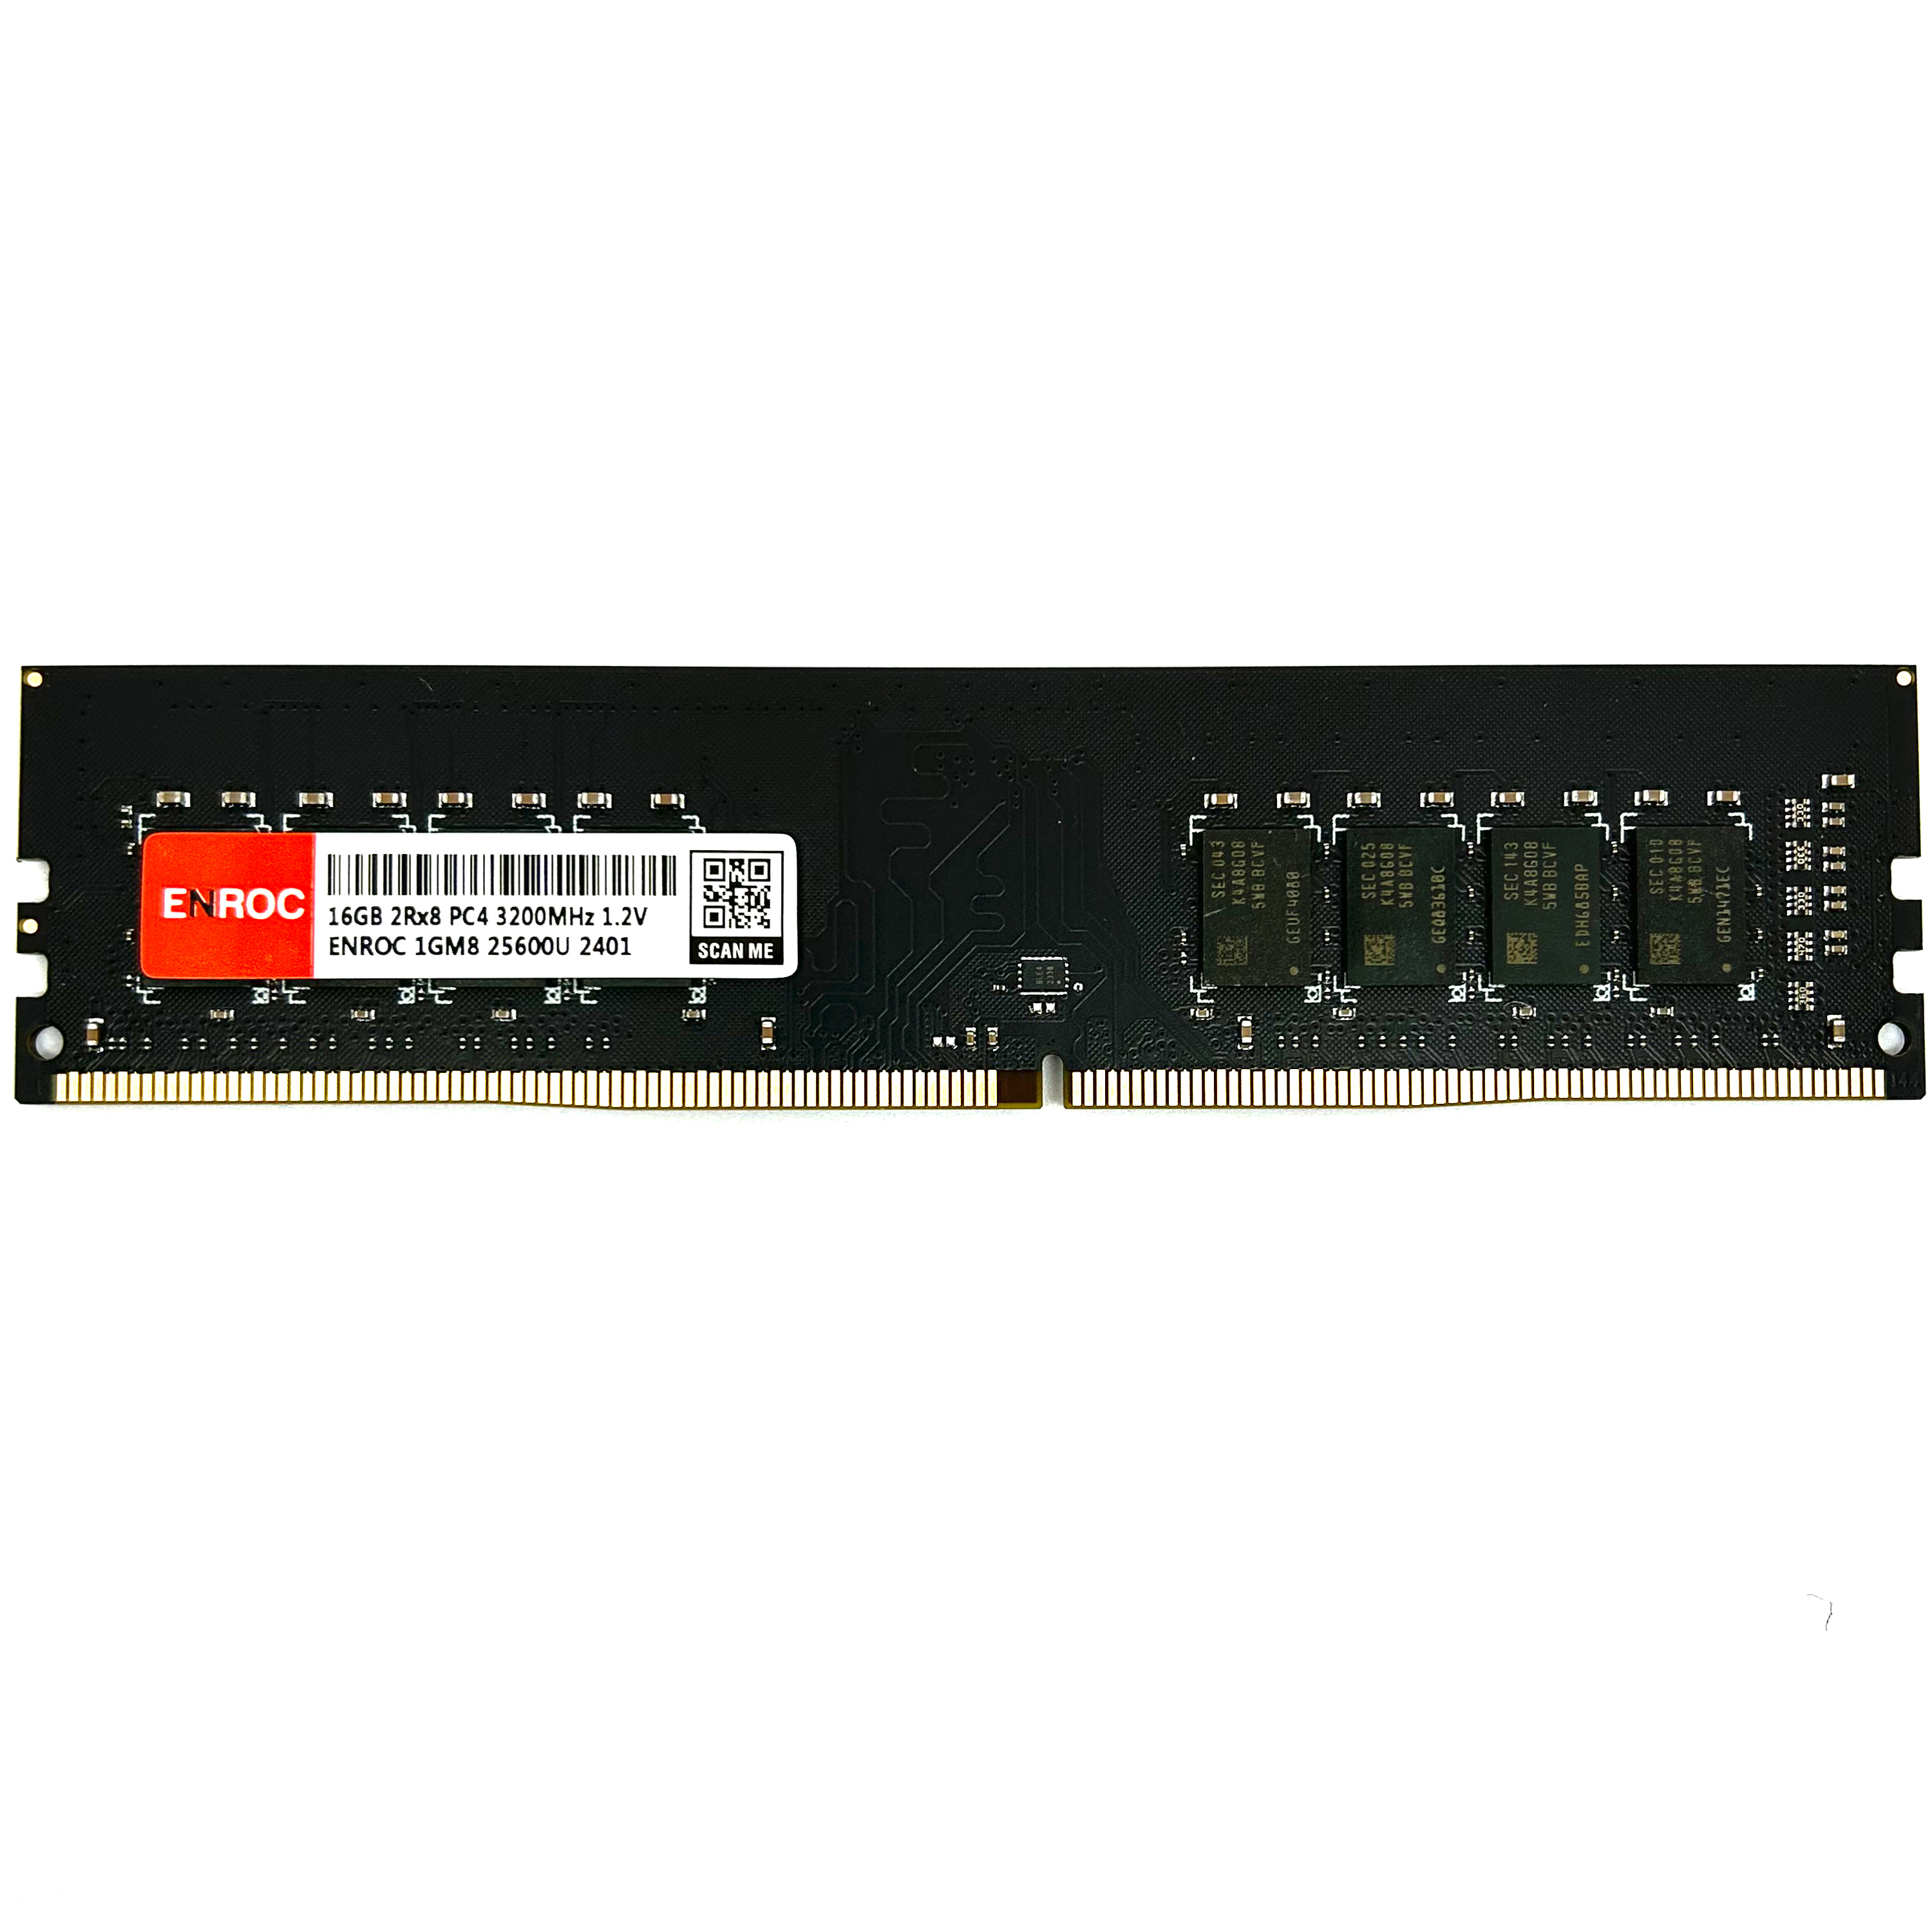 ENROC ERC880 Memory DDR4 RAM 3200 DDR4 GB UDIMM MHz 16 16GB Desktop